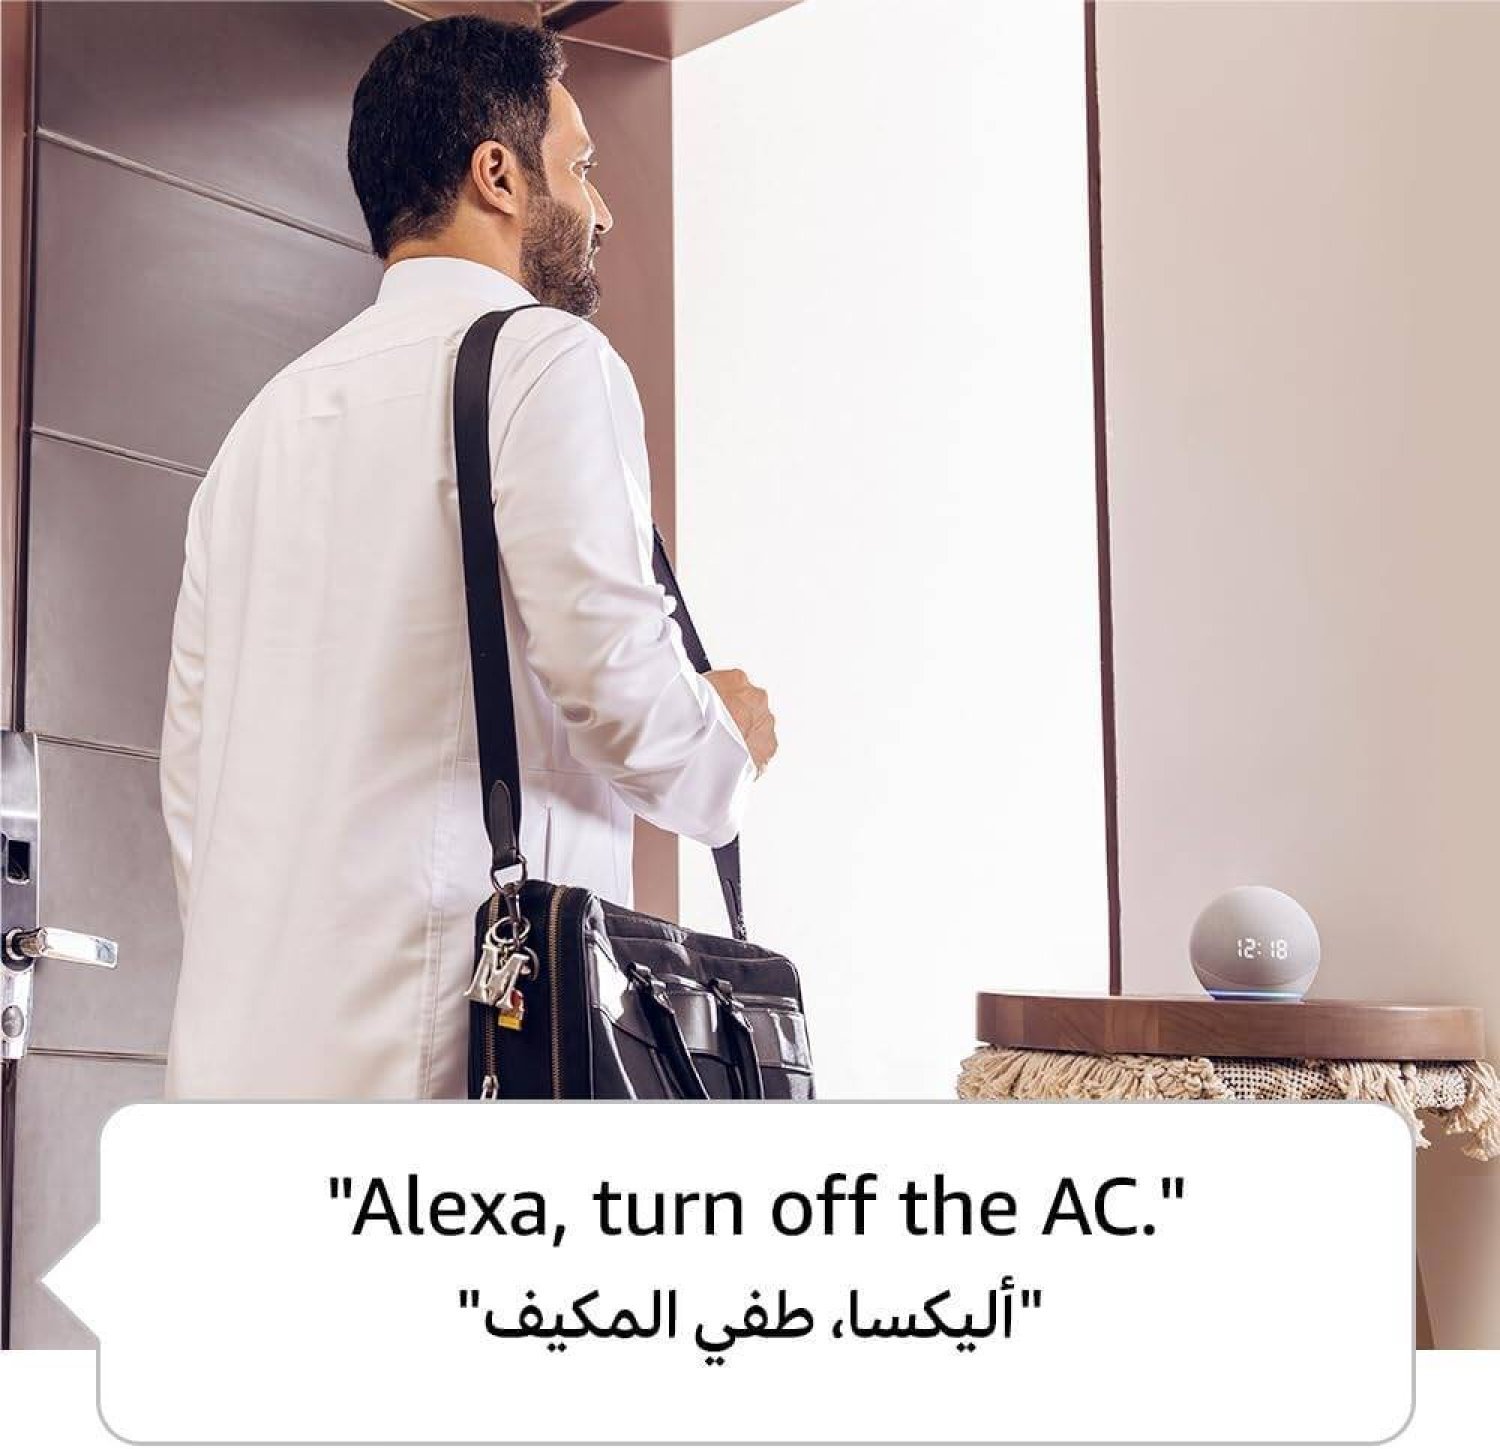 المستخدمون في منطقة الشرق الأوسط الأكثر تفاعلاً في العالم مع «أليكسا» لإدارة أجهزة المنزل الذكي والعبادة والترفيه